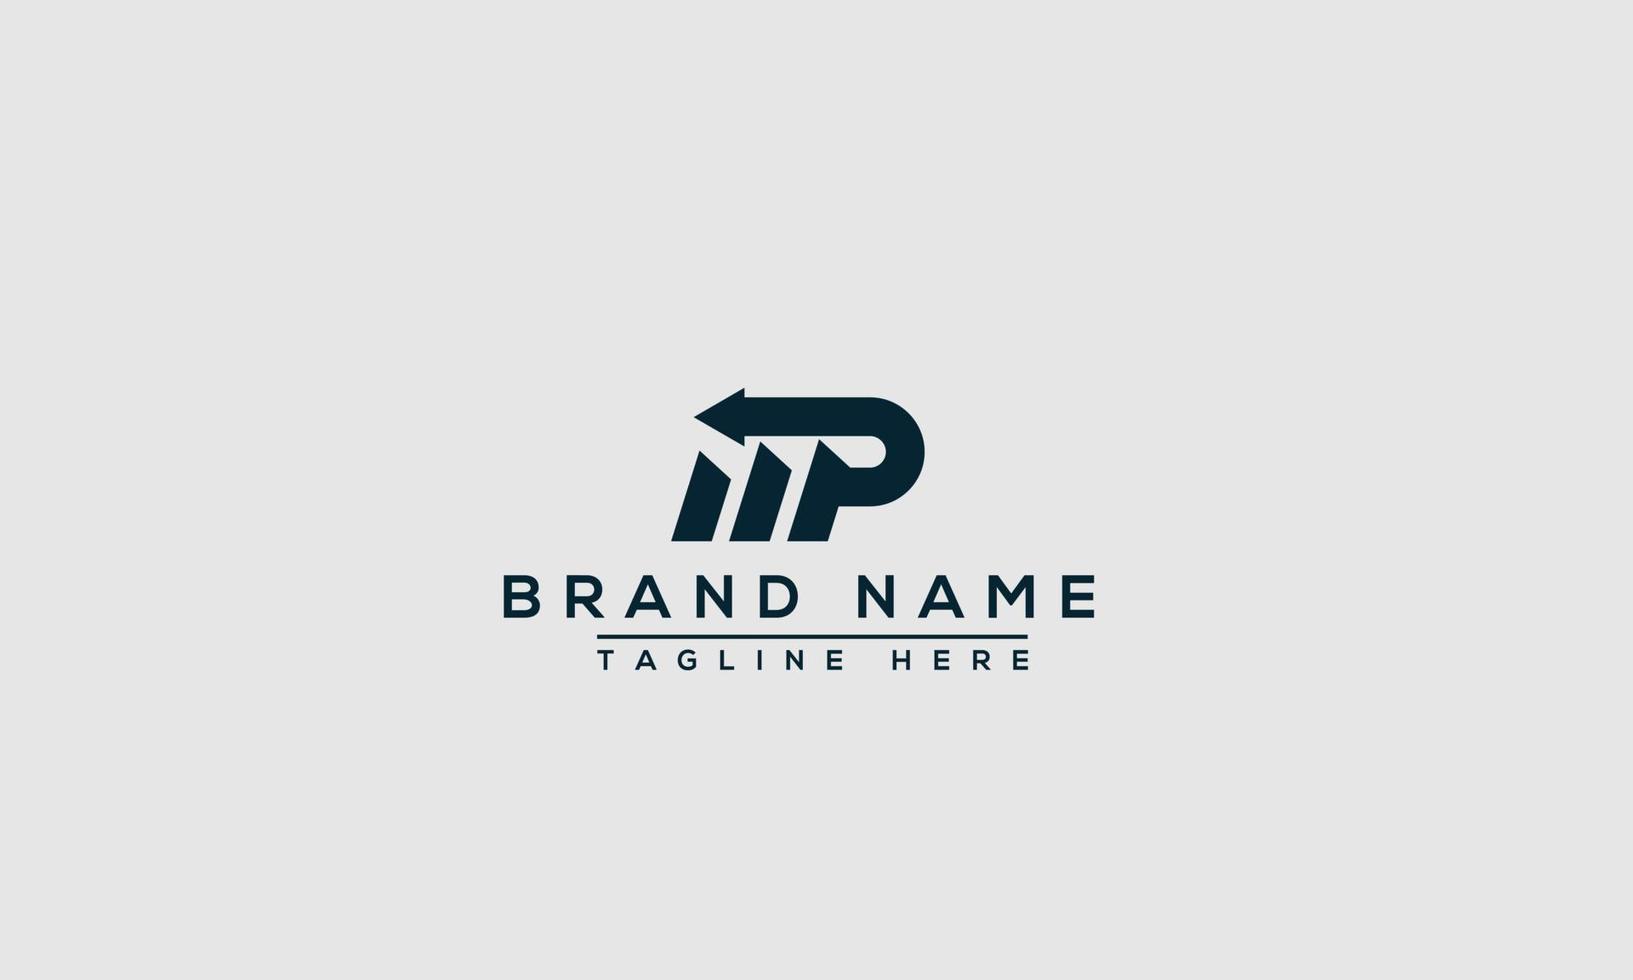 elemento de marca gráfico vectorial de plantilla de diseño de logotipo mp. vector